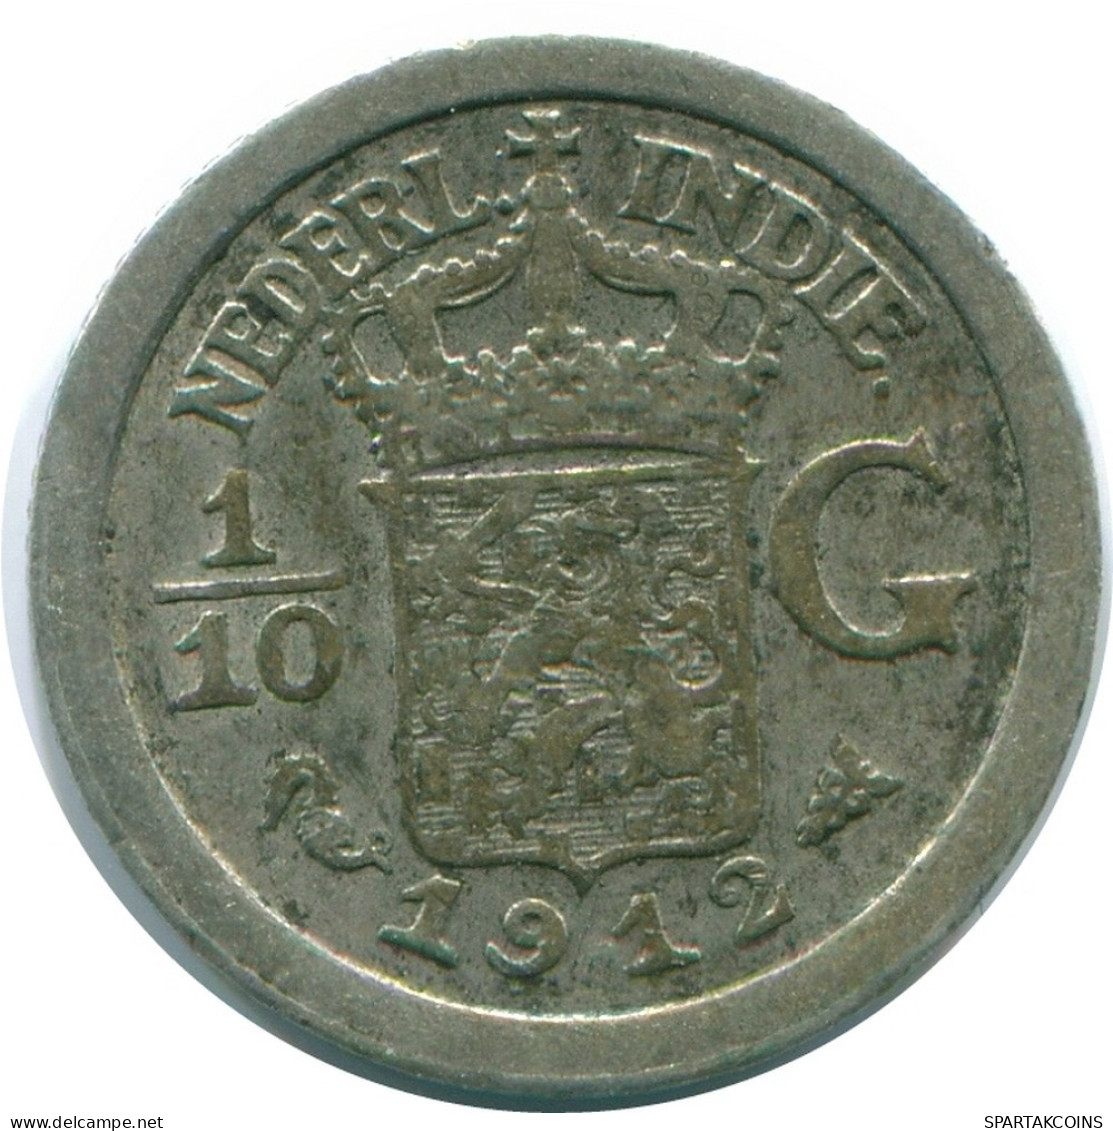 1/10 GULDEN 1912 NETHERLANDS EAST INDIES SILVER Colonial Coin #NL13259.3.U.A - Niederländisch-Indien